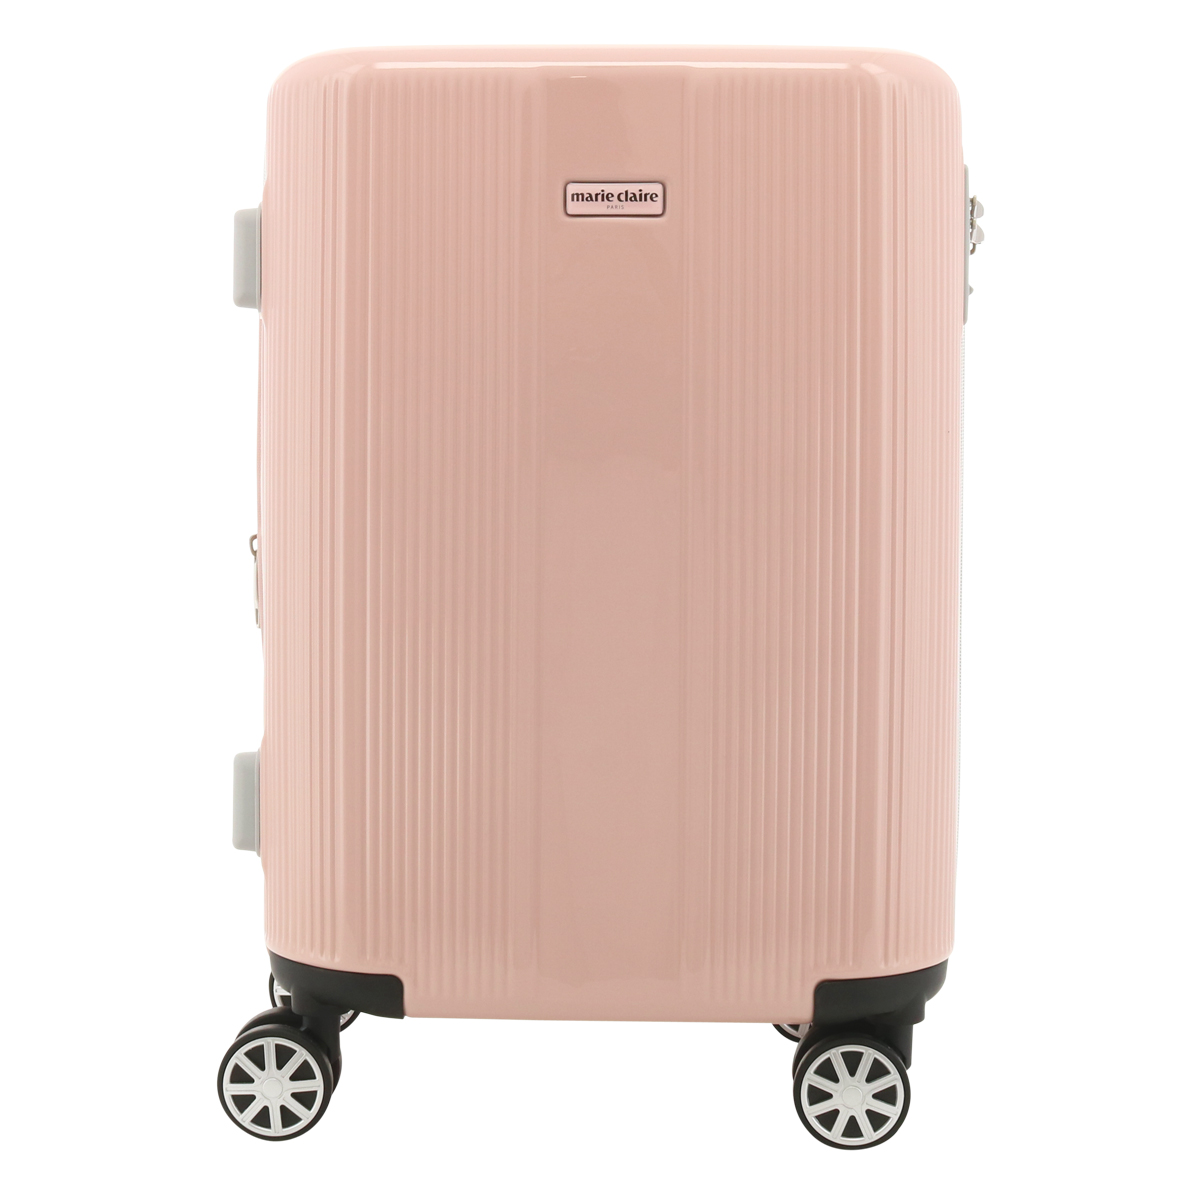 マリクレール スーツケース 3.2kg 35L 48cm TSAロック 機内持ち込み対応 カプリシャス 240-5000 marie claire キャリーケース ハードキャリー 4輪